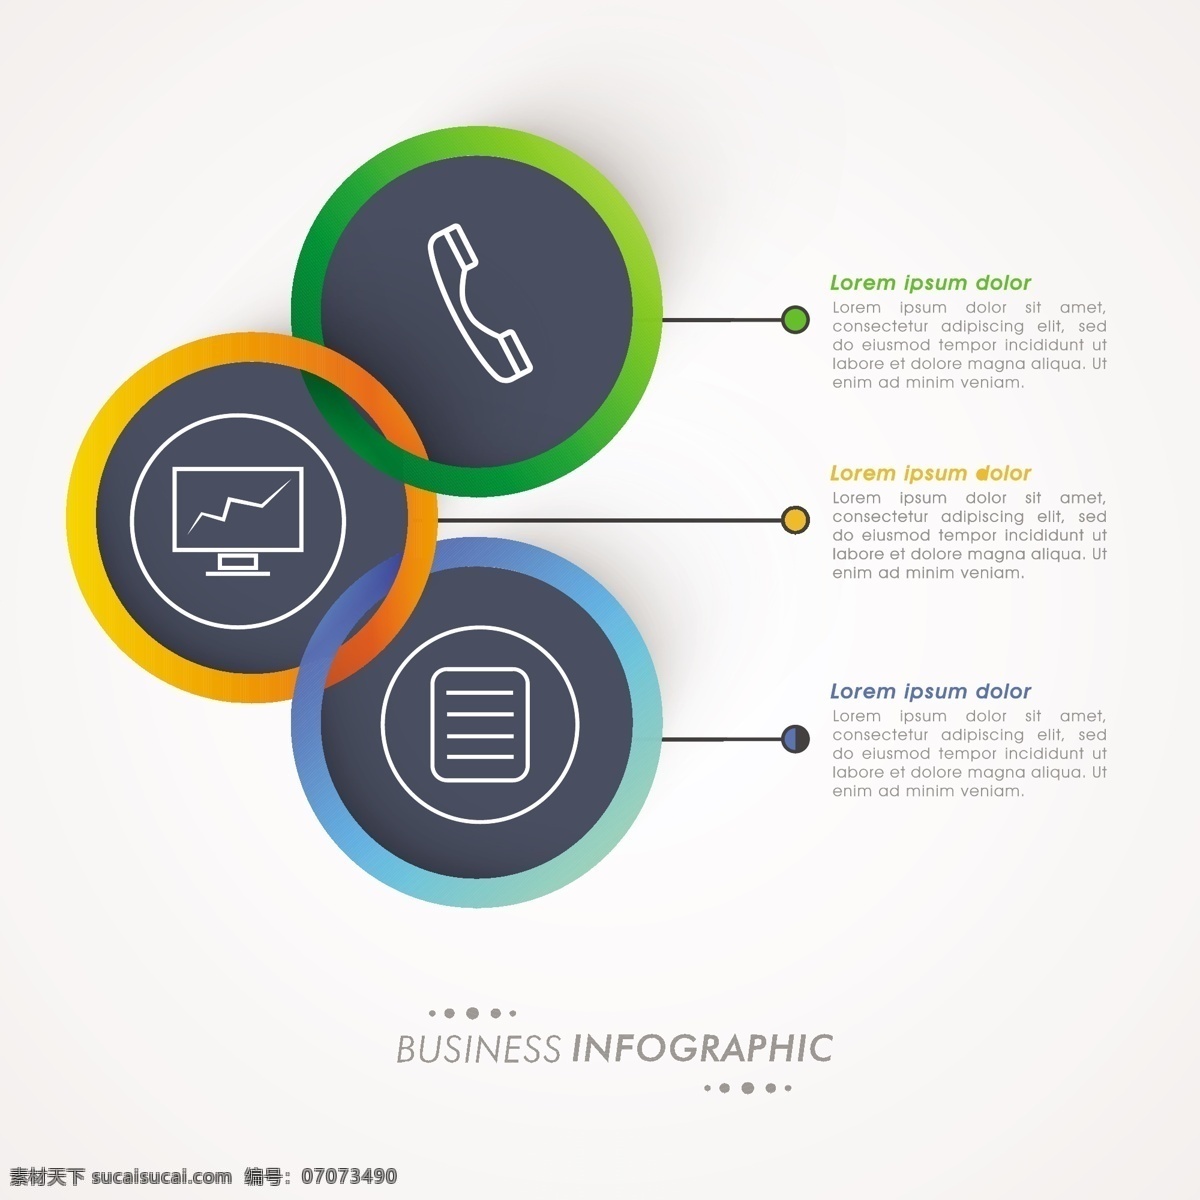 三个 不同 颜色 圆圈 商业 图表 商业圈 模板 营销 色彩 图形 工艺图表模板 数据 圆 界 信息 业务信息